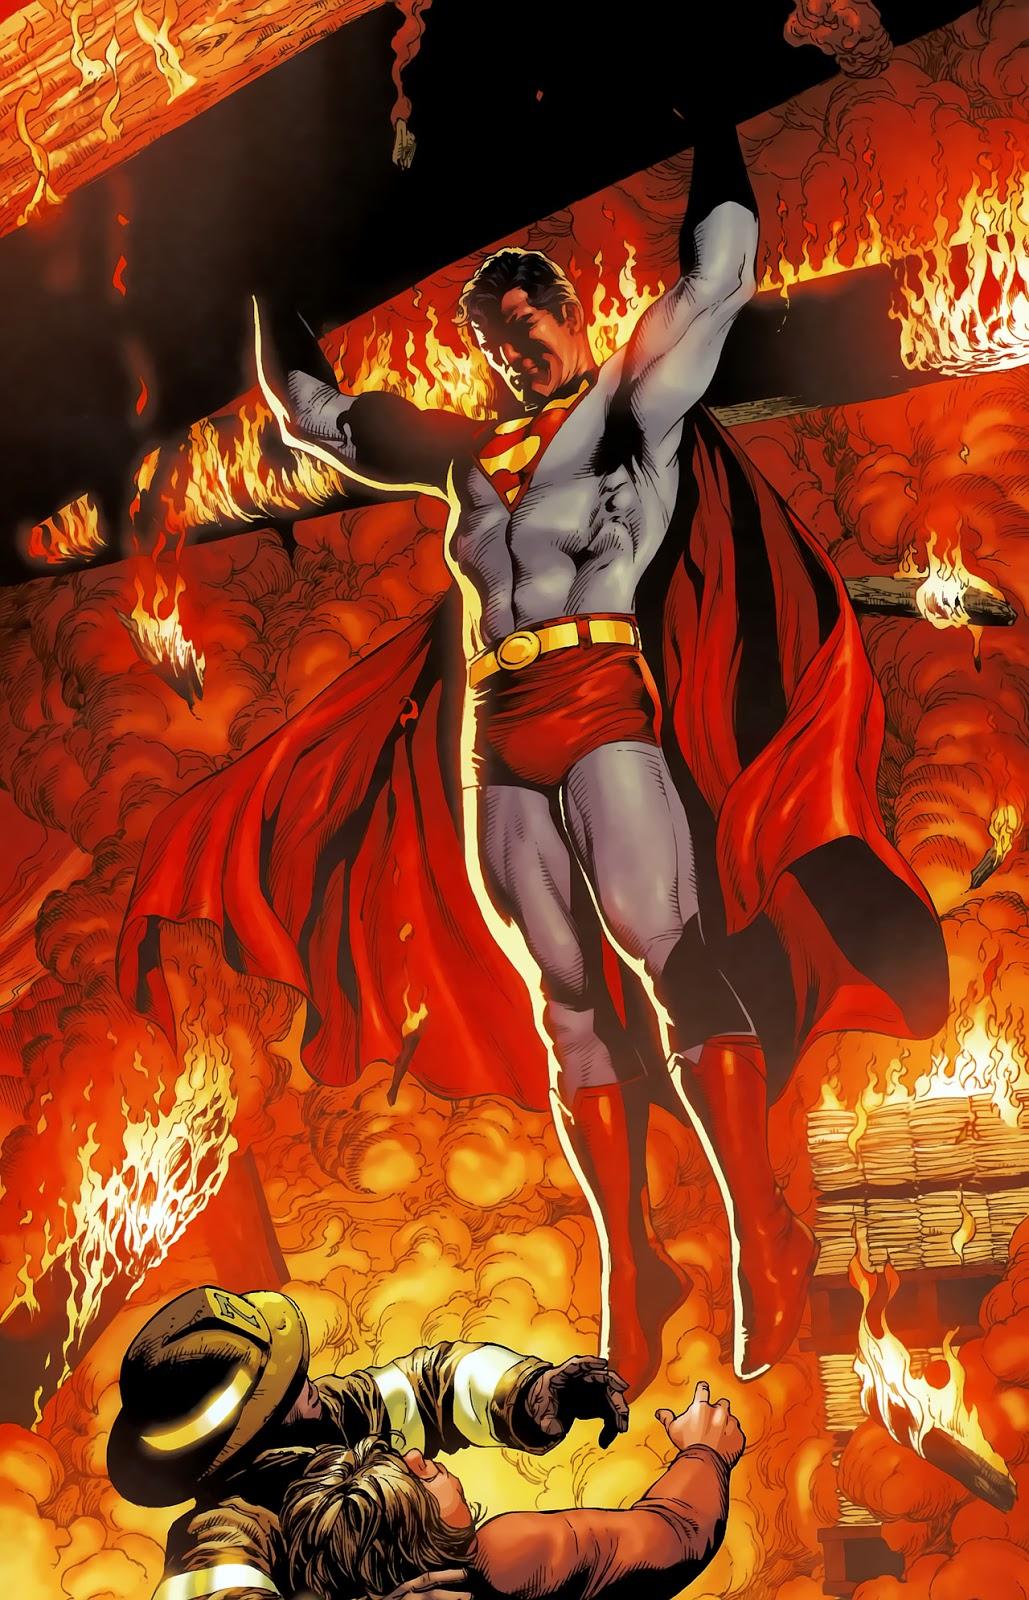 Superman. Su historia en los comics.